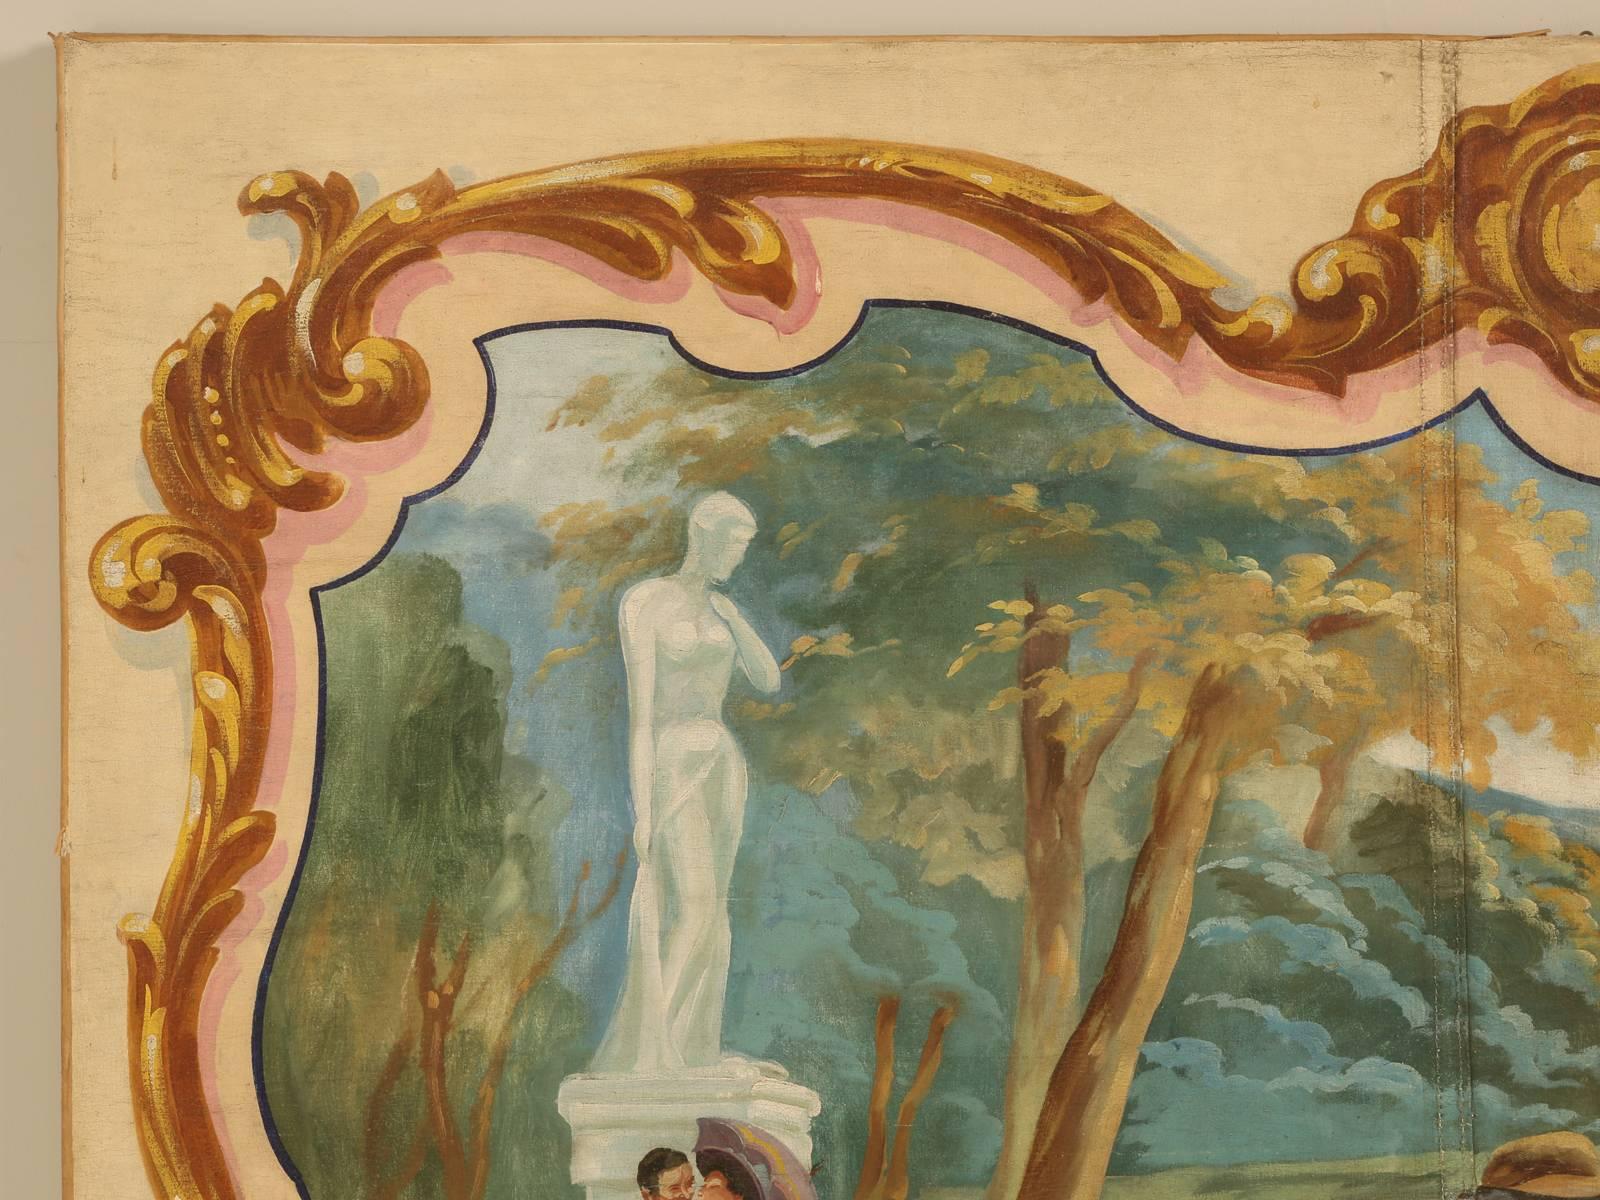 Immense huile sur toile française, vers la fin des années 1930, représentant une automobile Delahaye. Nous ne savons pas si cette œuvre a été peinte à grande échelle, puis réduite pour une publicité ou une affiche. Peut-être commandé pour une salle